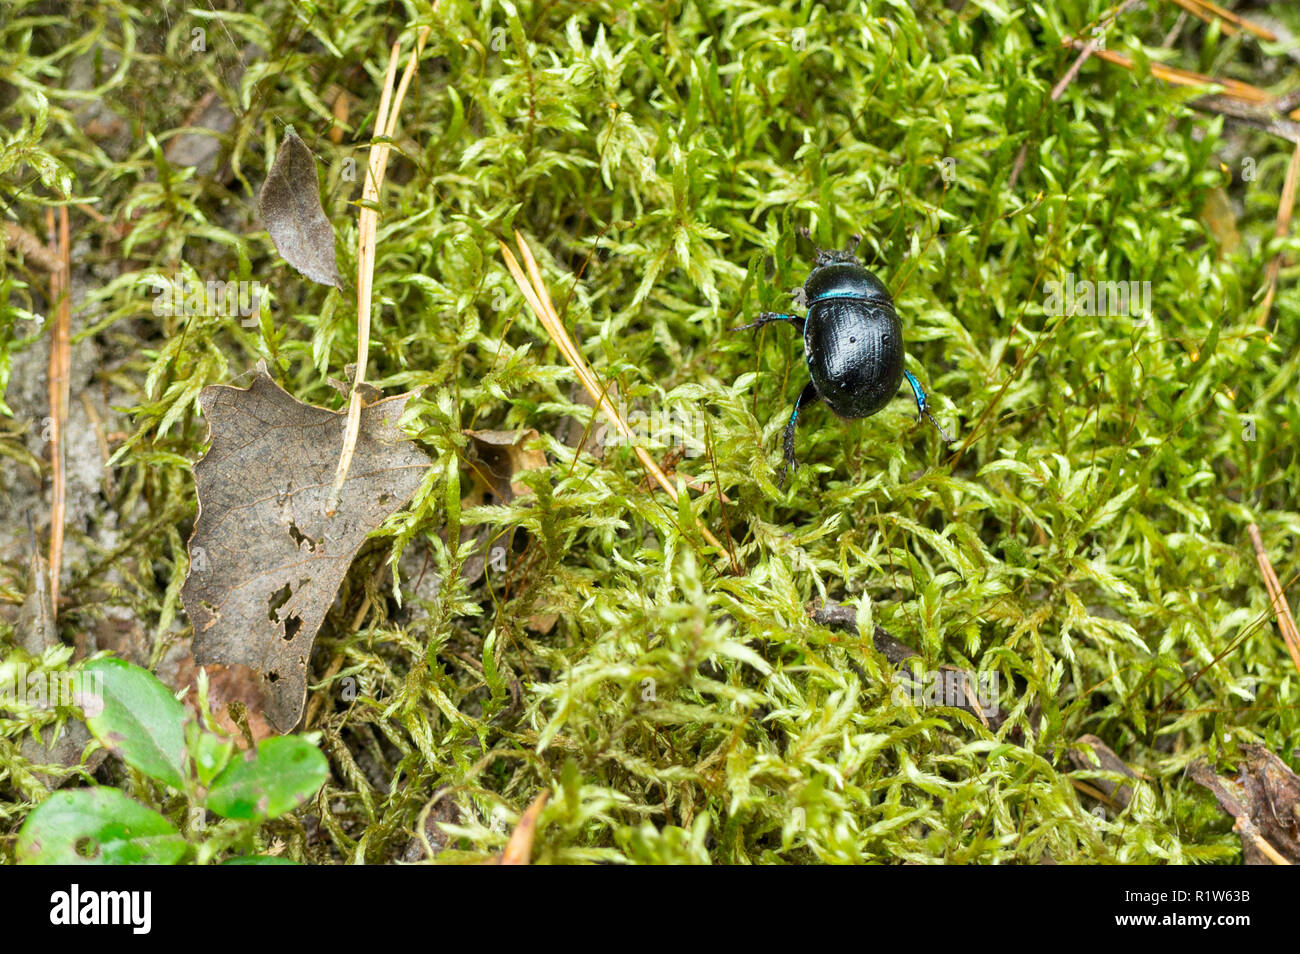 Una decoración azul escarabajo sobre musgo verde Foto de stock